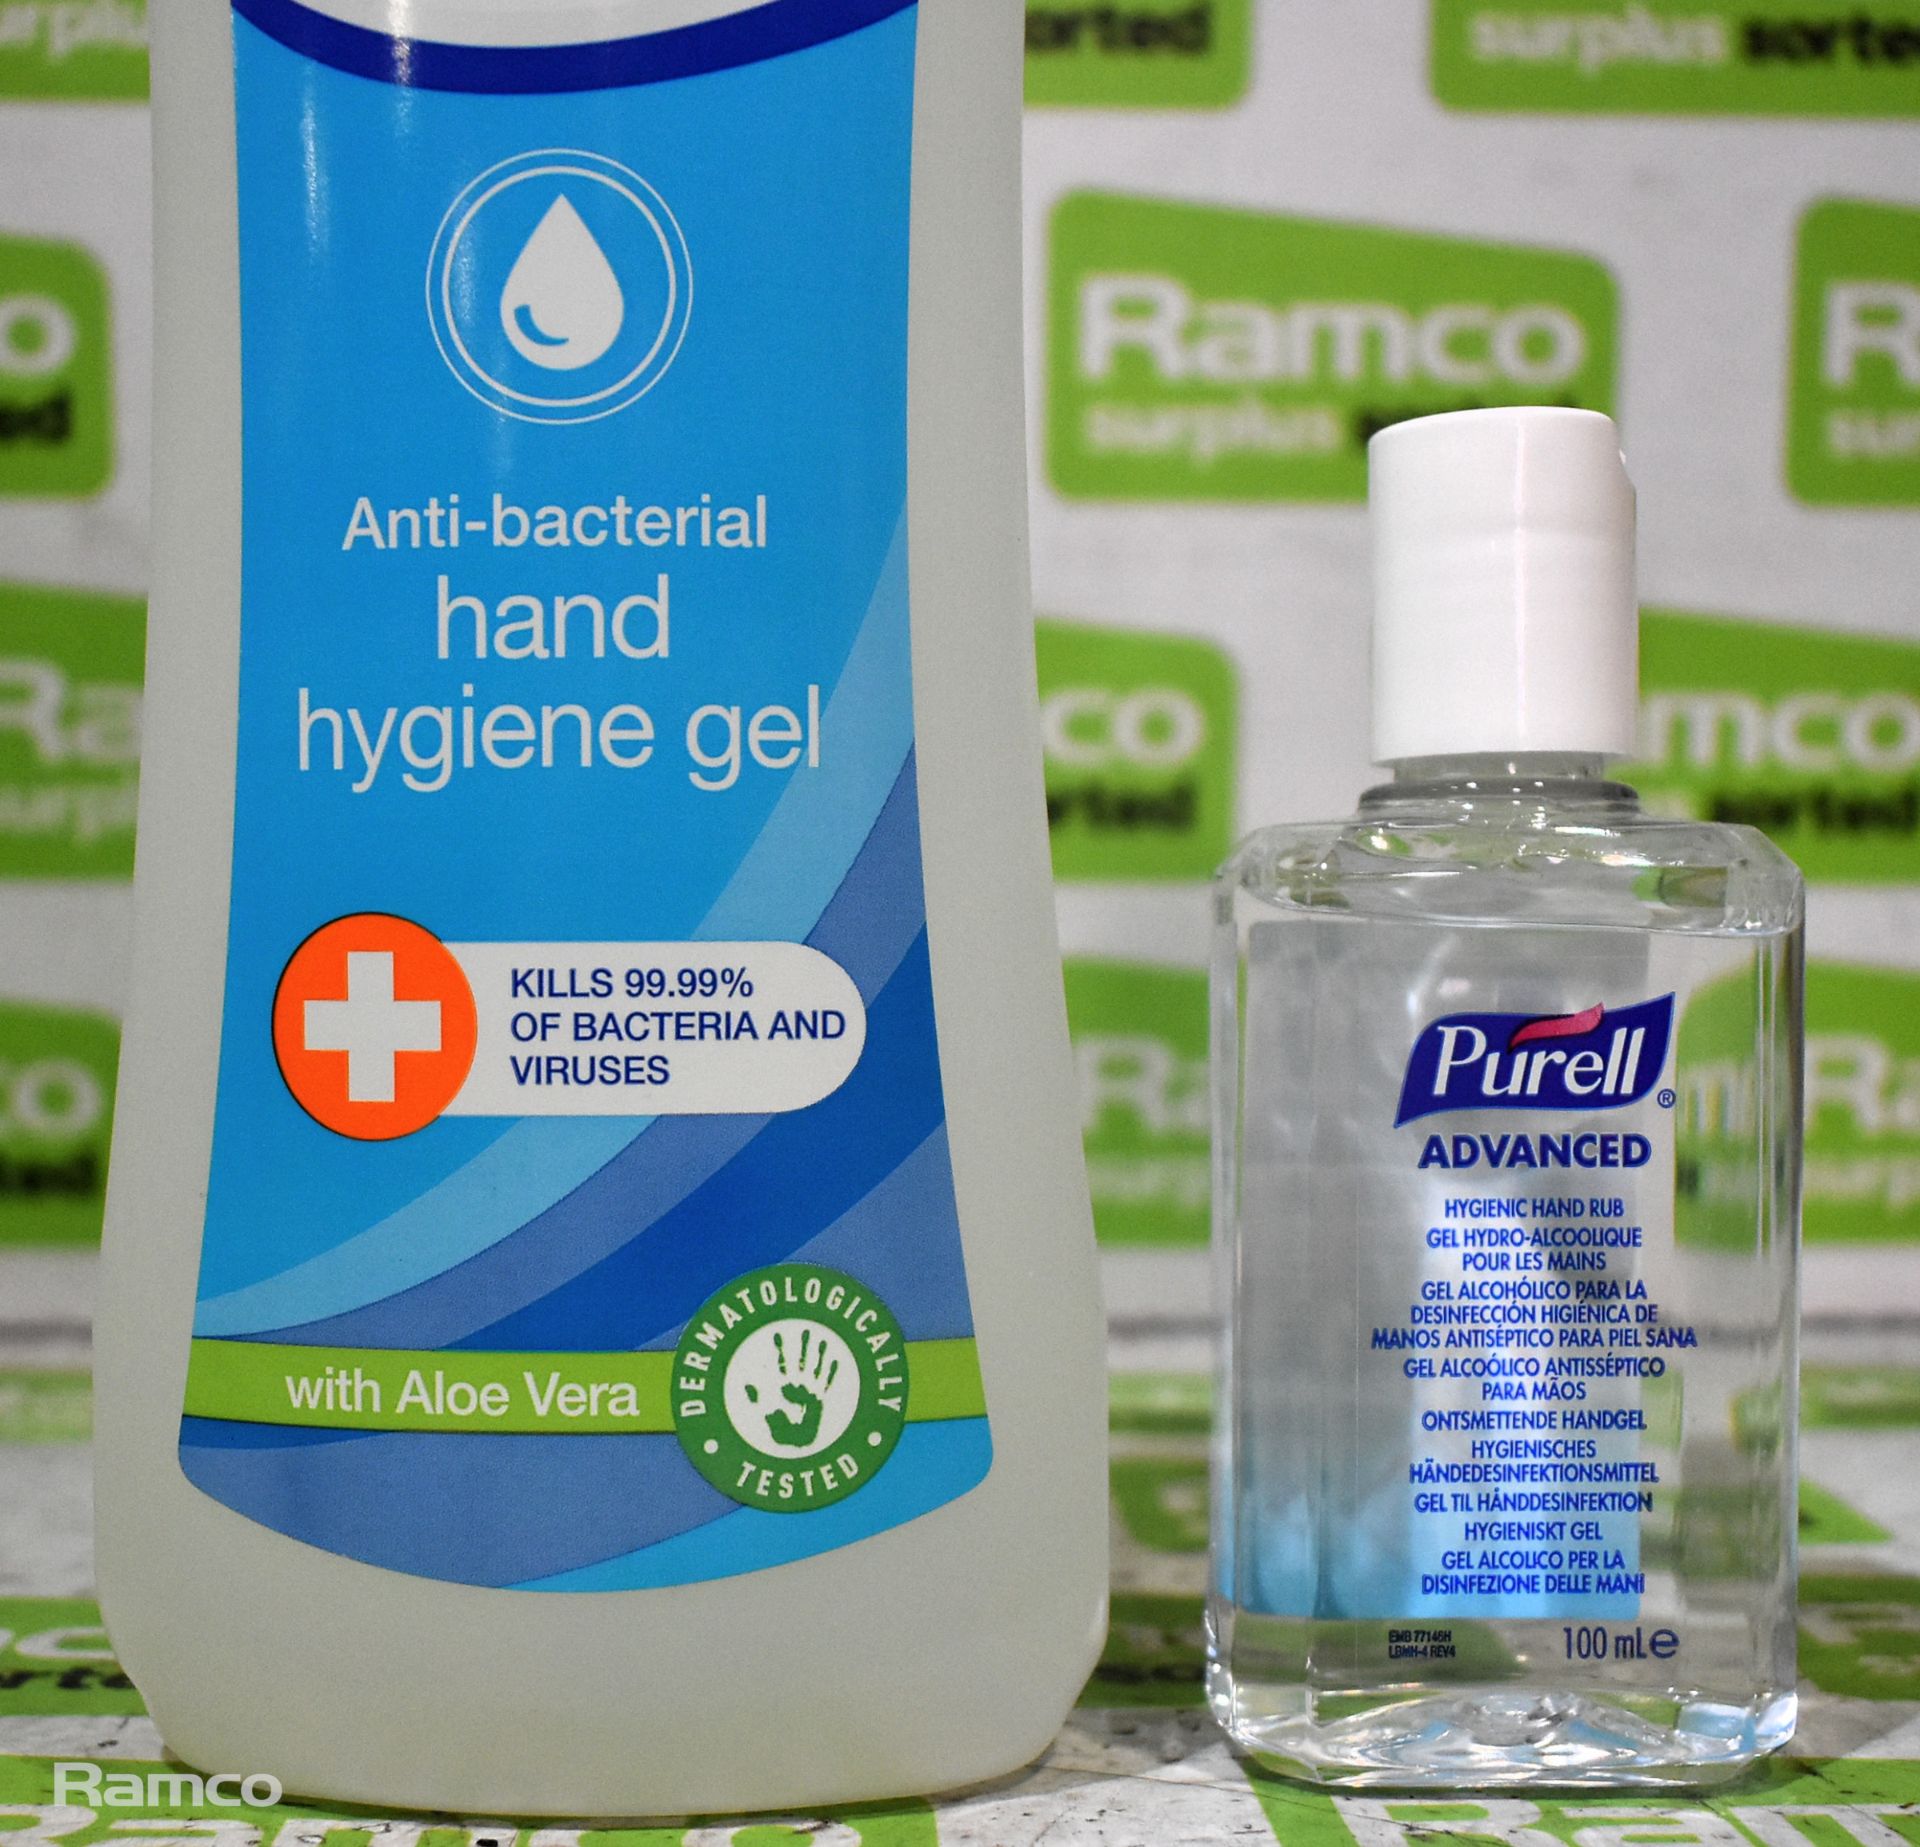 23 boxes of Hand sanitizing/Hygienic gel - Expired - mixed bottle sizes - Image 5 of 7